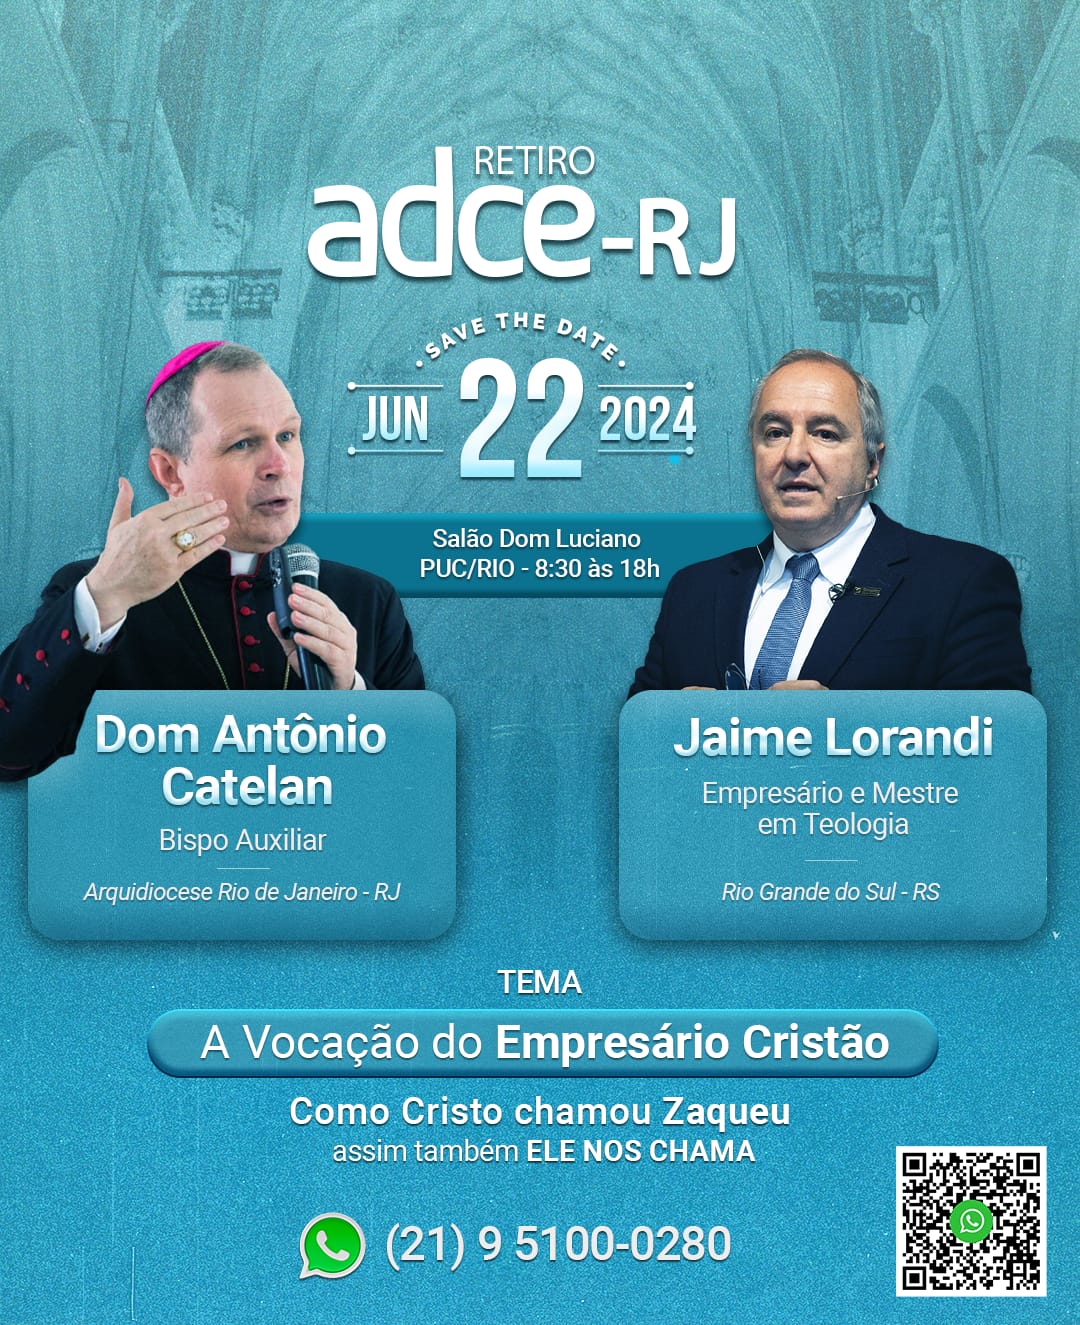 Venha participar do Retiro ADCE, que acontecerá no Rio de Janeiro!